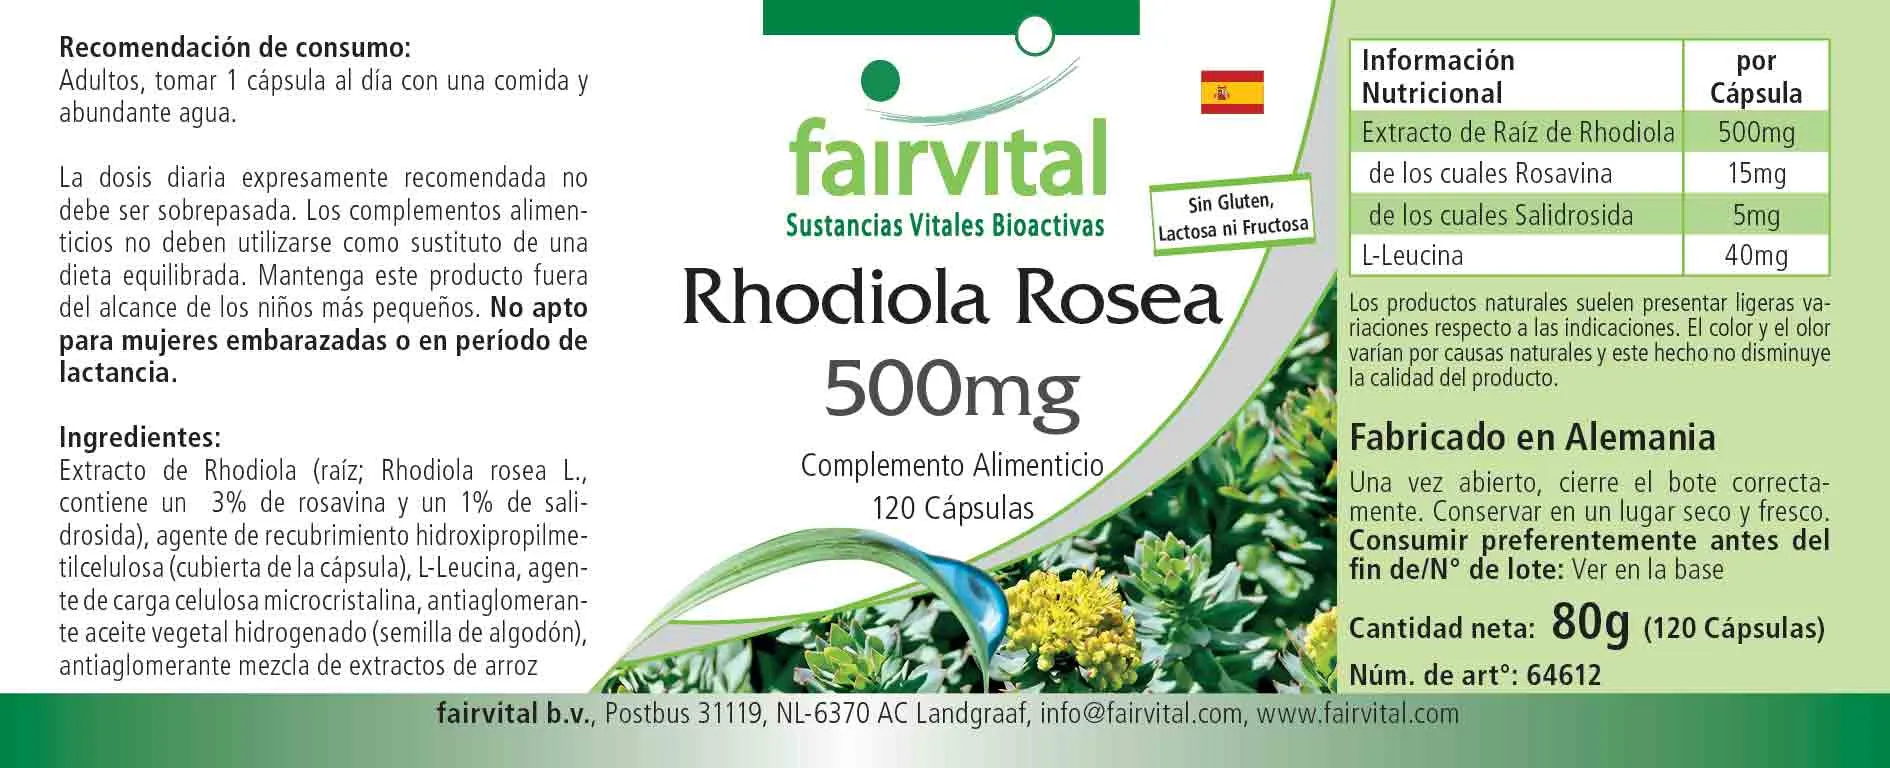 Rhodiola Rosea 500mg - 120 capsule